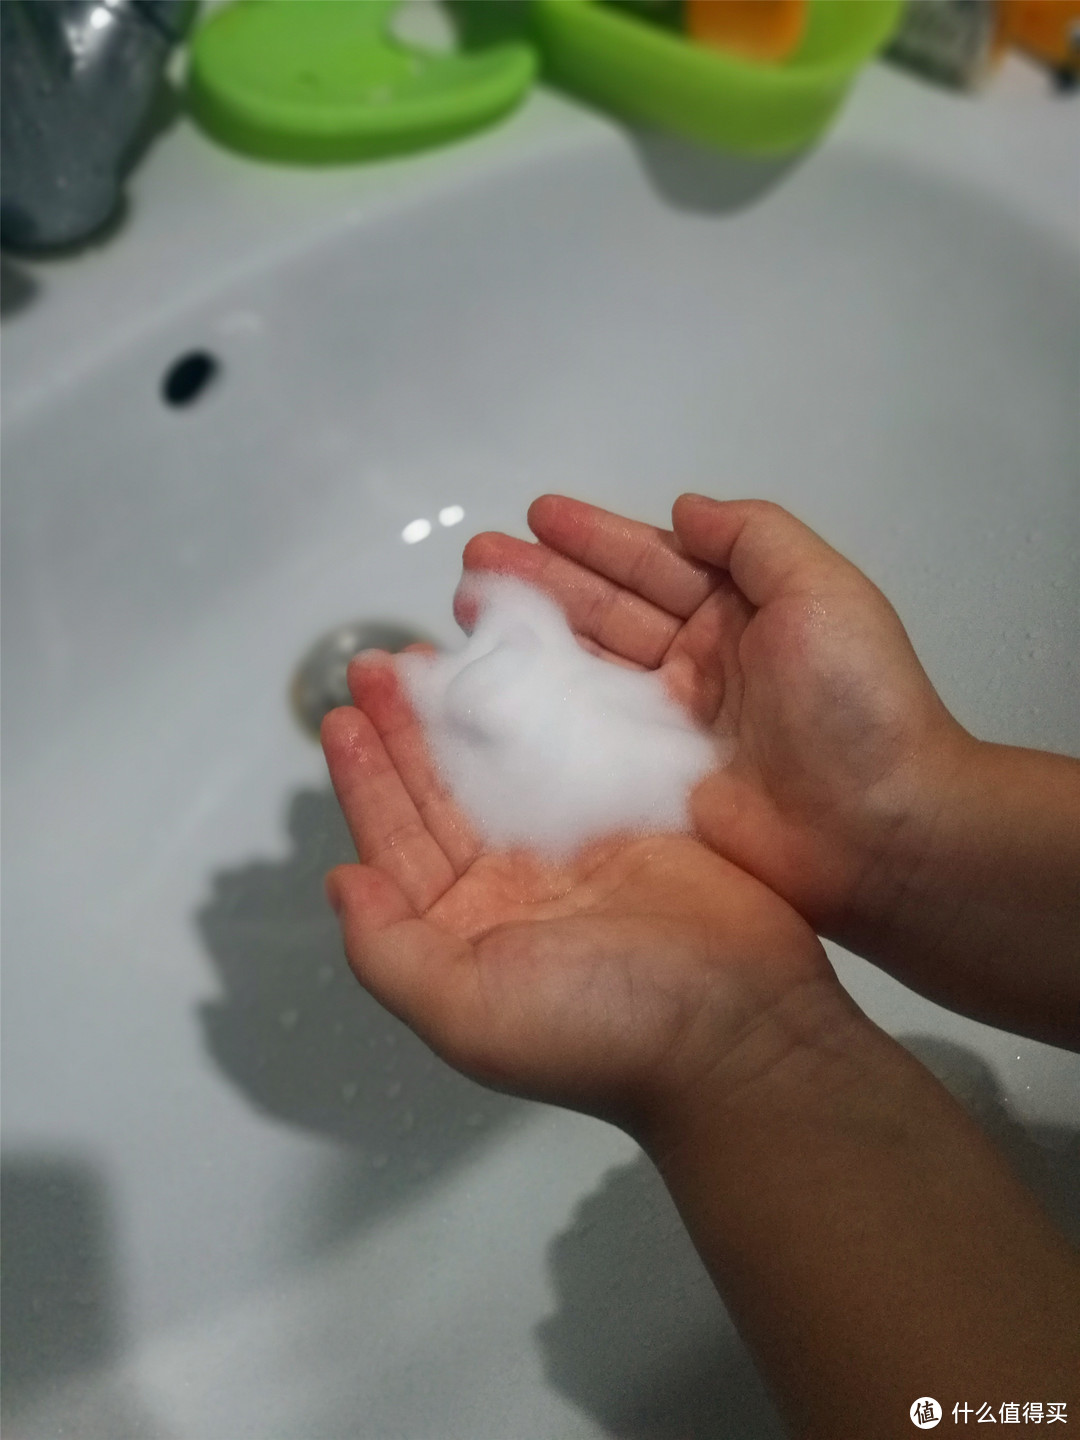 怎么样才能让孩子改变不爱洗手的臭毛病？今天我来试试这个小七泡泡自动出泡洗手机看看如何